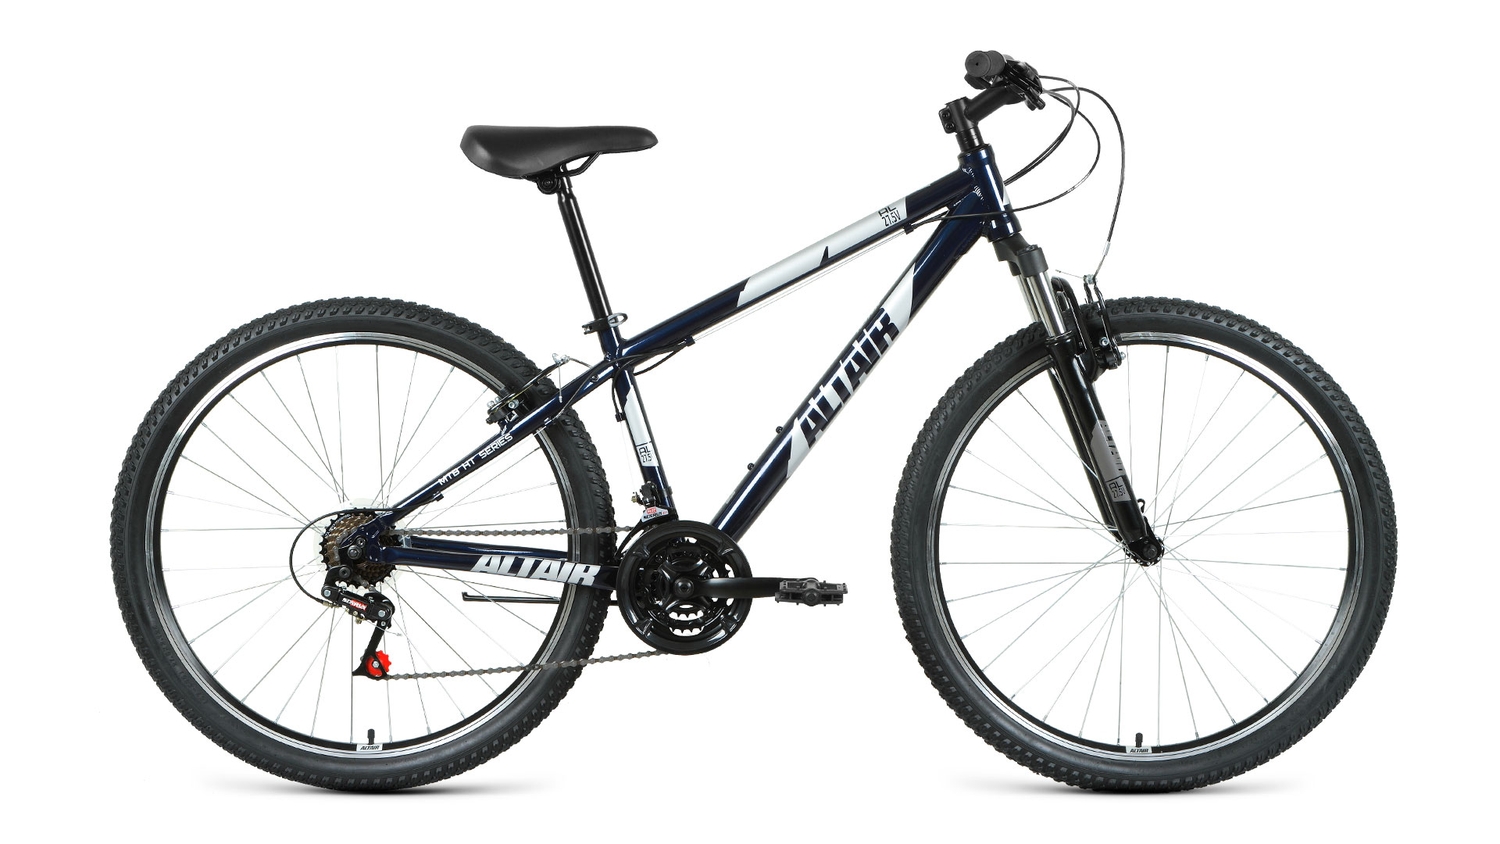 Горный велосипед Altair AL 27.5 V, год 2021, цвет Синий-Серебристый, ростовка 17